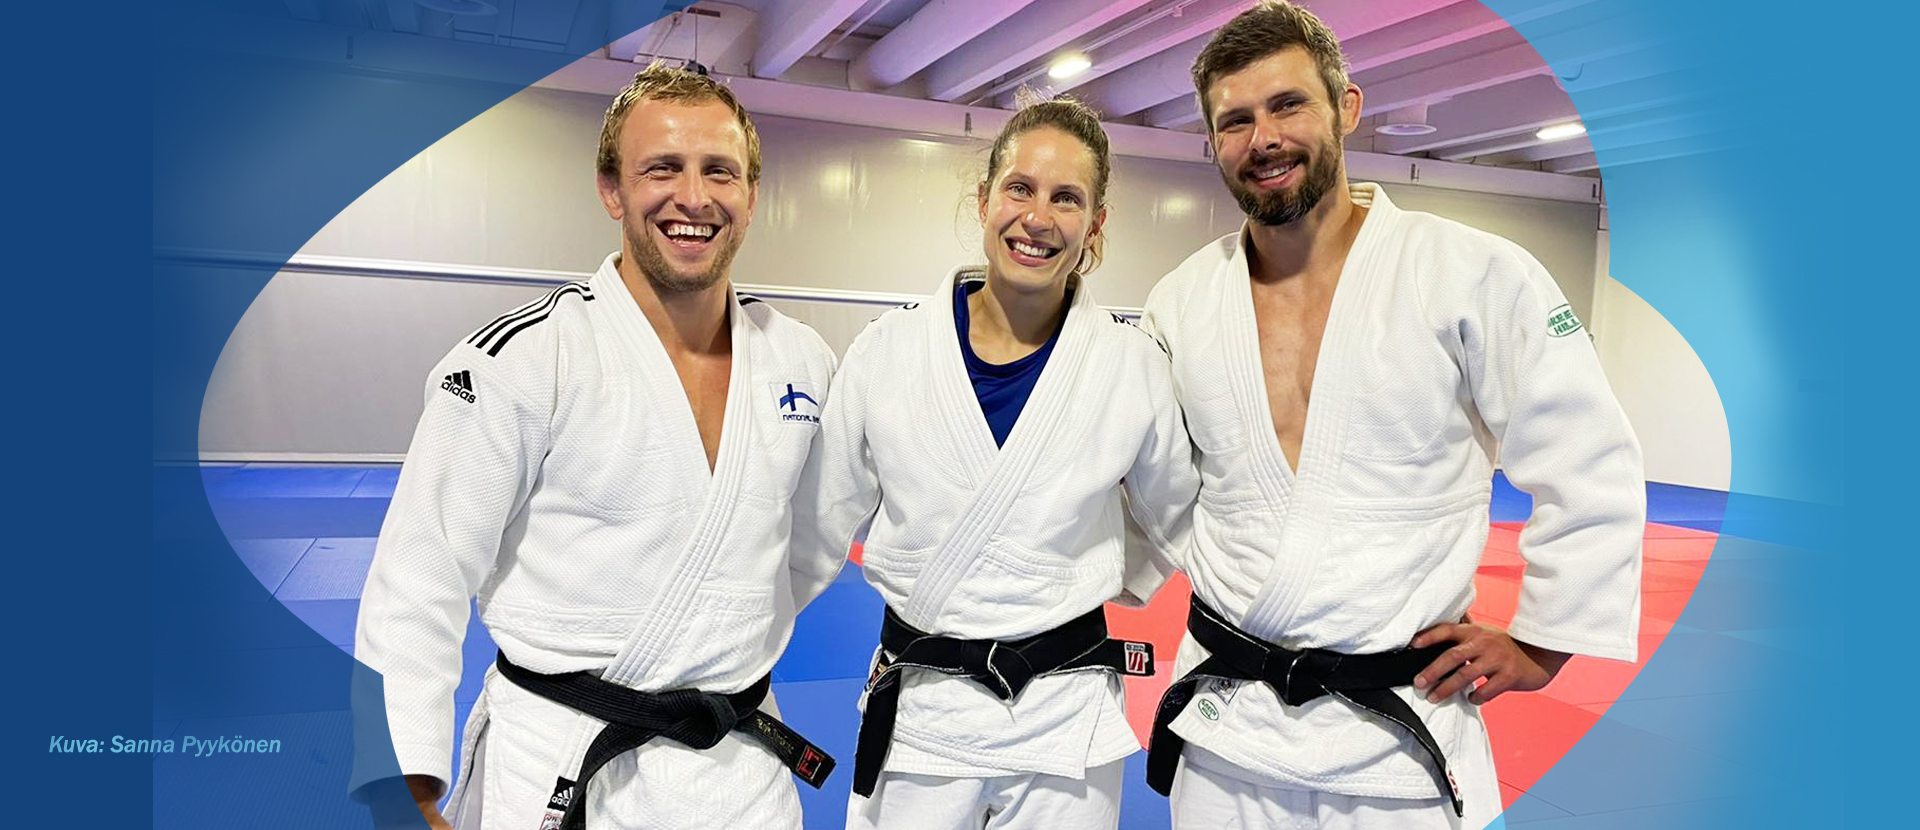 Etelä-Suomen Judo ry arkistot - Suomen Judoliitto ry